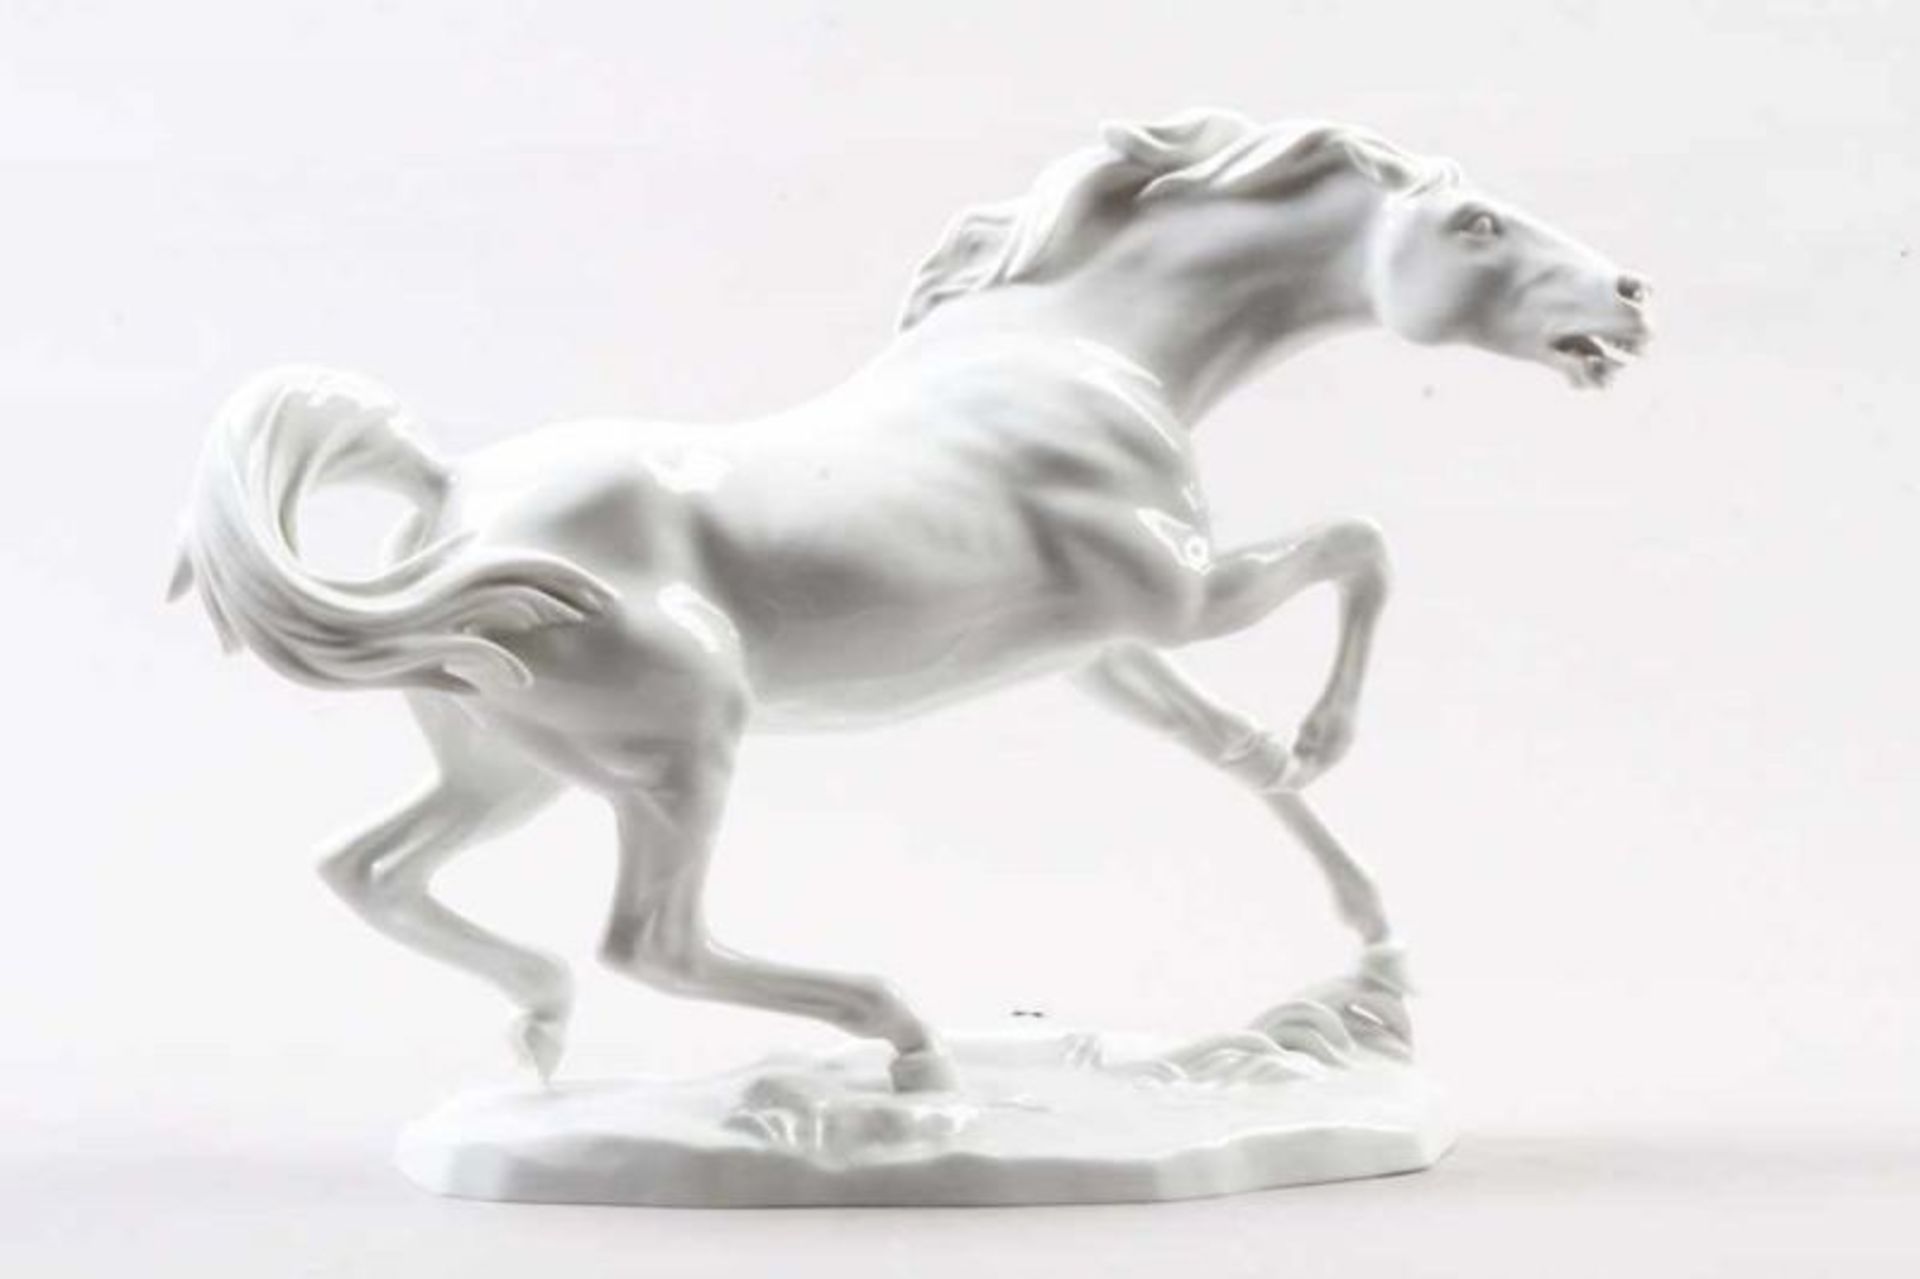 Porzellanfigur.Wien- Augarten. 20. Jh. Porzellan, weiße Glasur. Rasendes Pferd auf flachem Sockel.